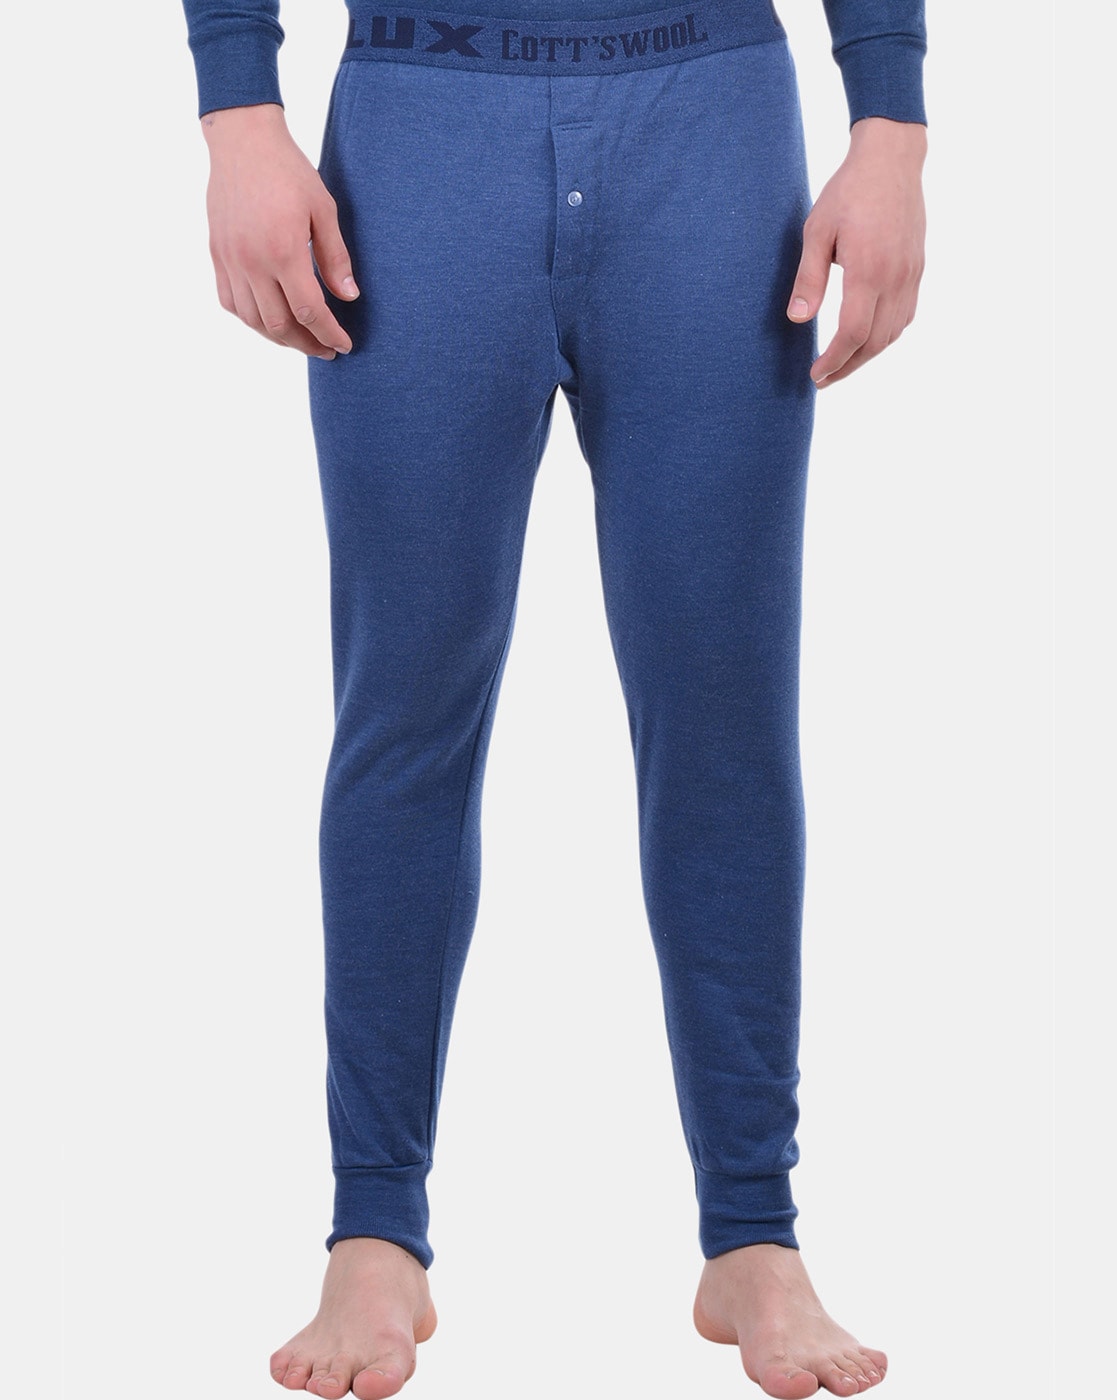 Buy Blue Thermal Wear for Men by LUX COTT'S WOOL Online